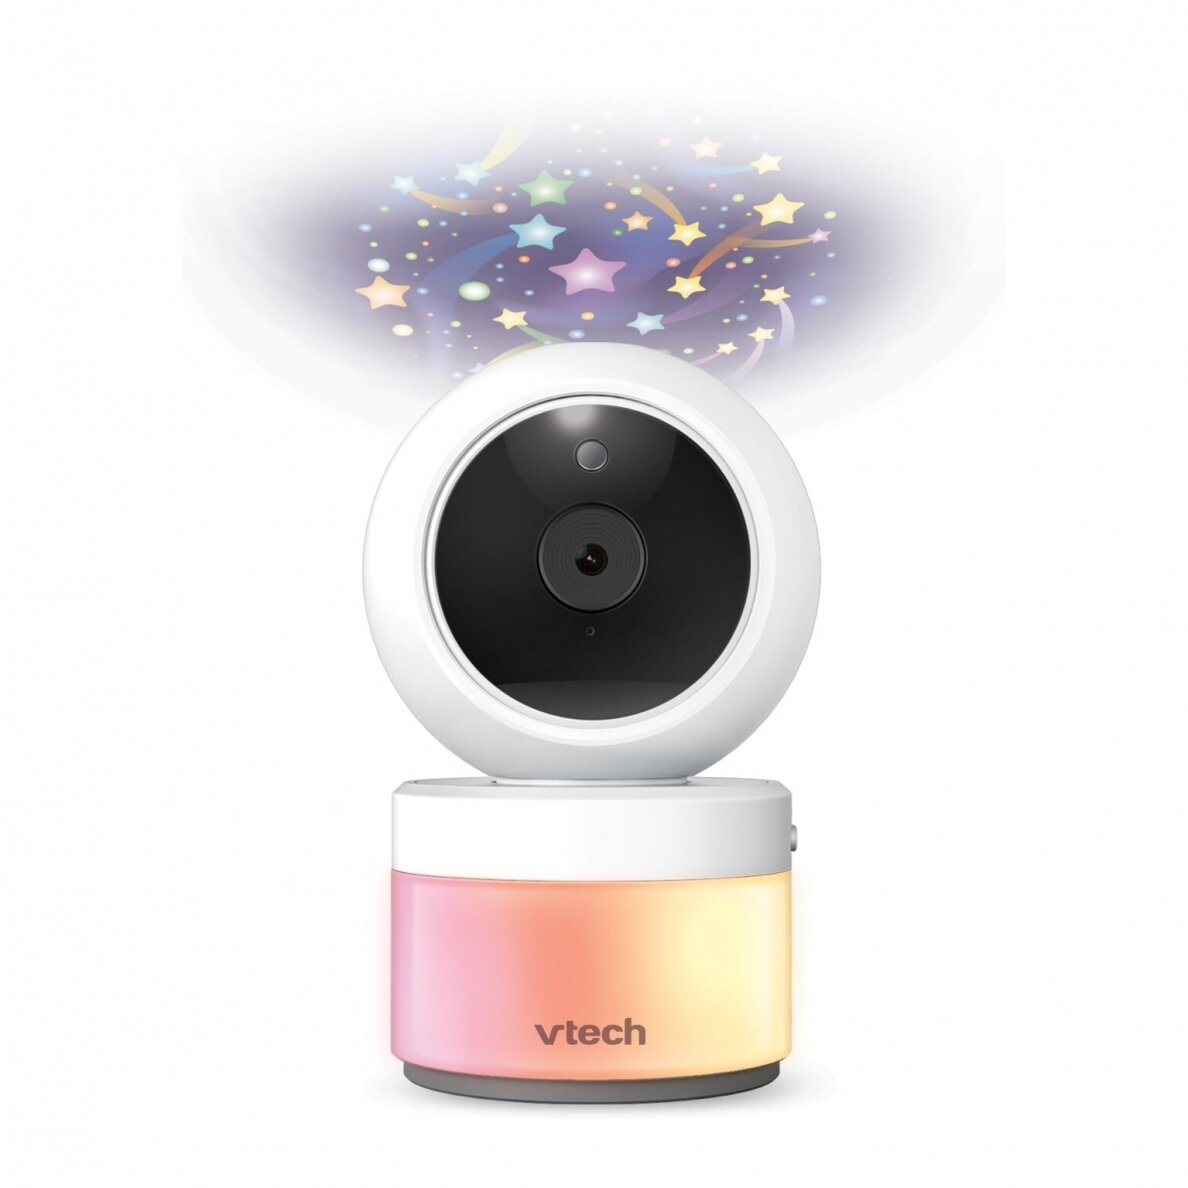 Vtech 5 collu digitālais video mazuļa monitors ar panoramēšanas un slīpuma kameru VM5463